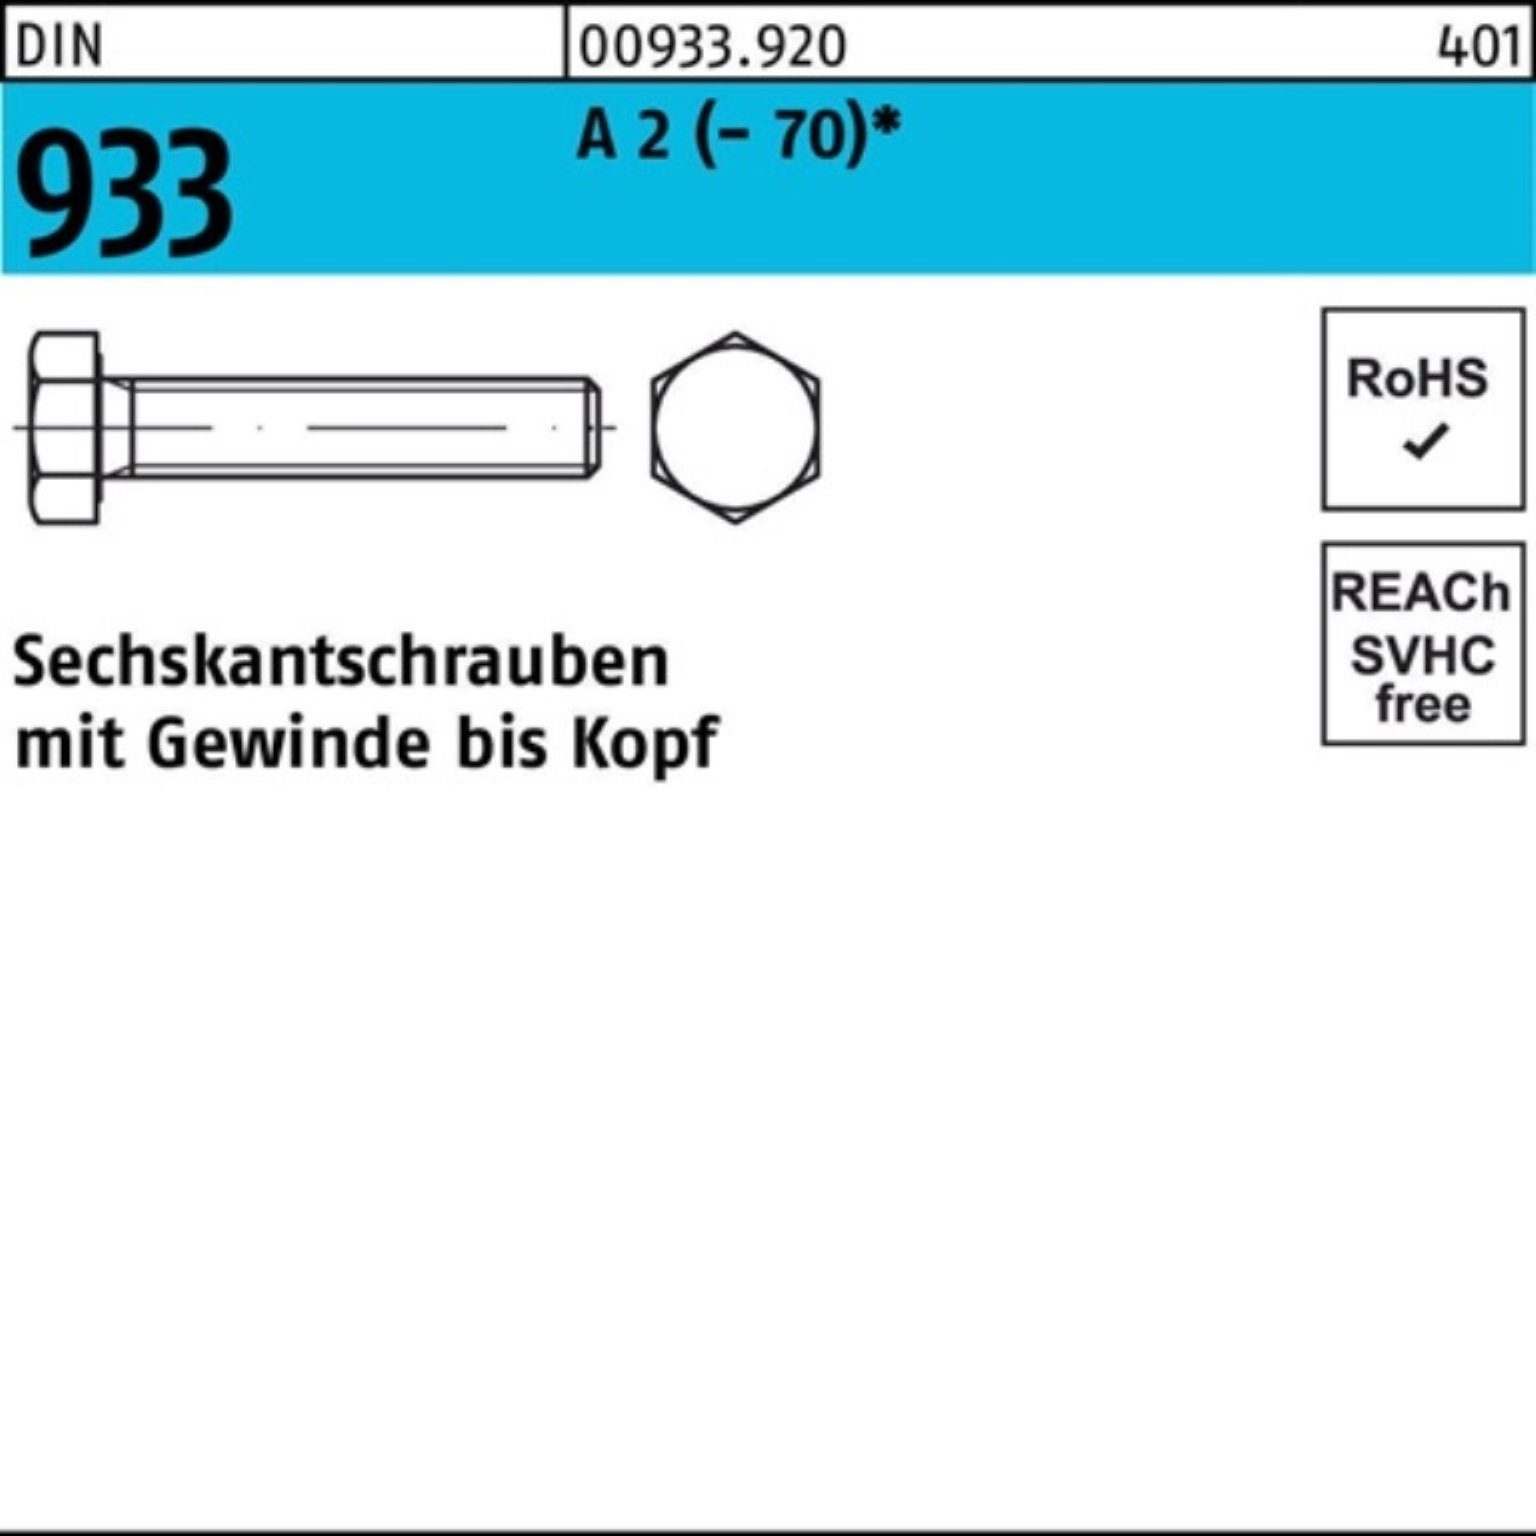 Reyher Sechskantschraube 500er Pack Sechskantschraube Stück 2 (70) D 933 10 VG M6x 500 DIN A